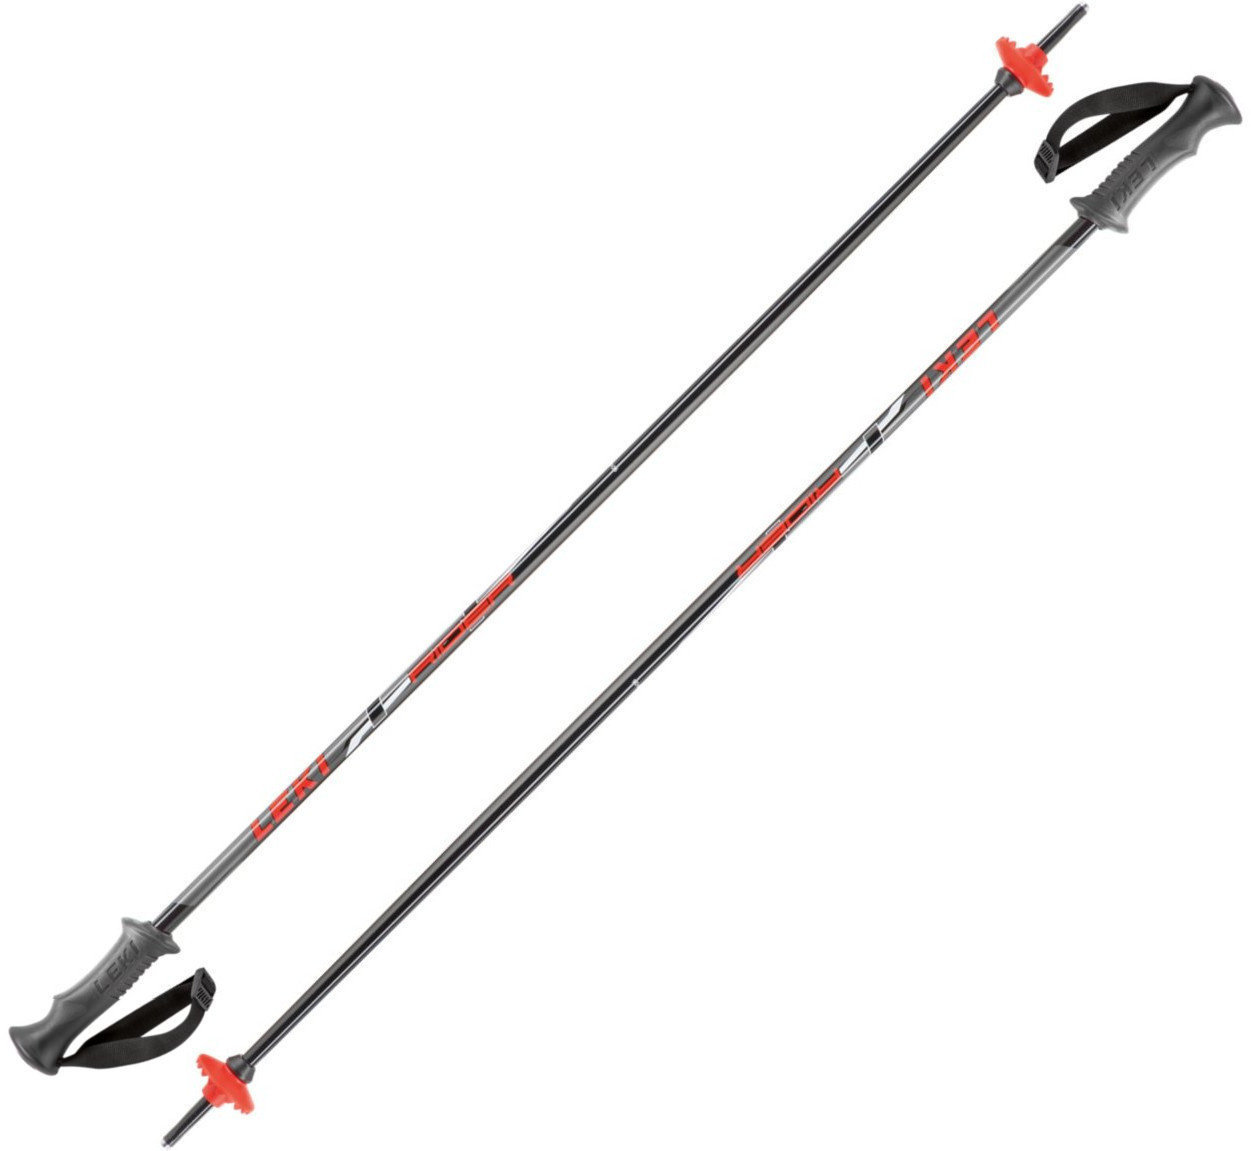 Ski Poles Leki Rider Black/Red/White/Anthracite 90 cm Ski Poles